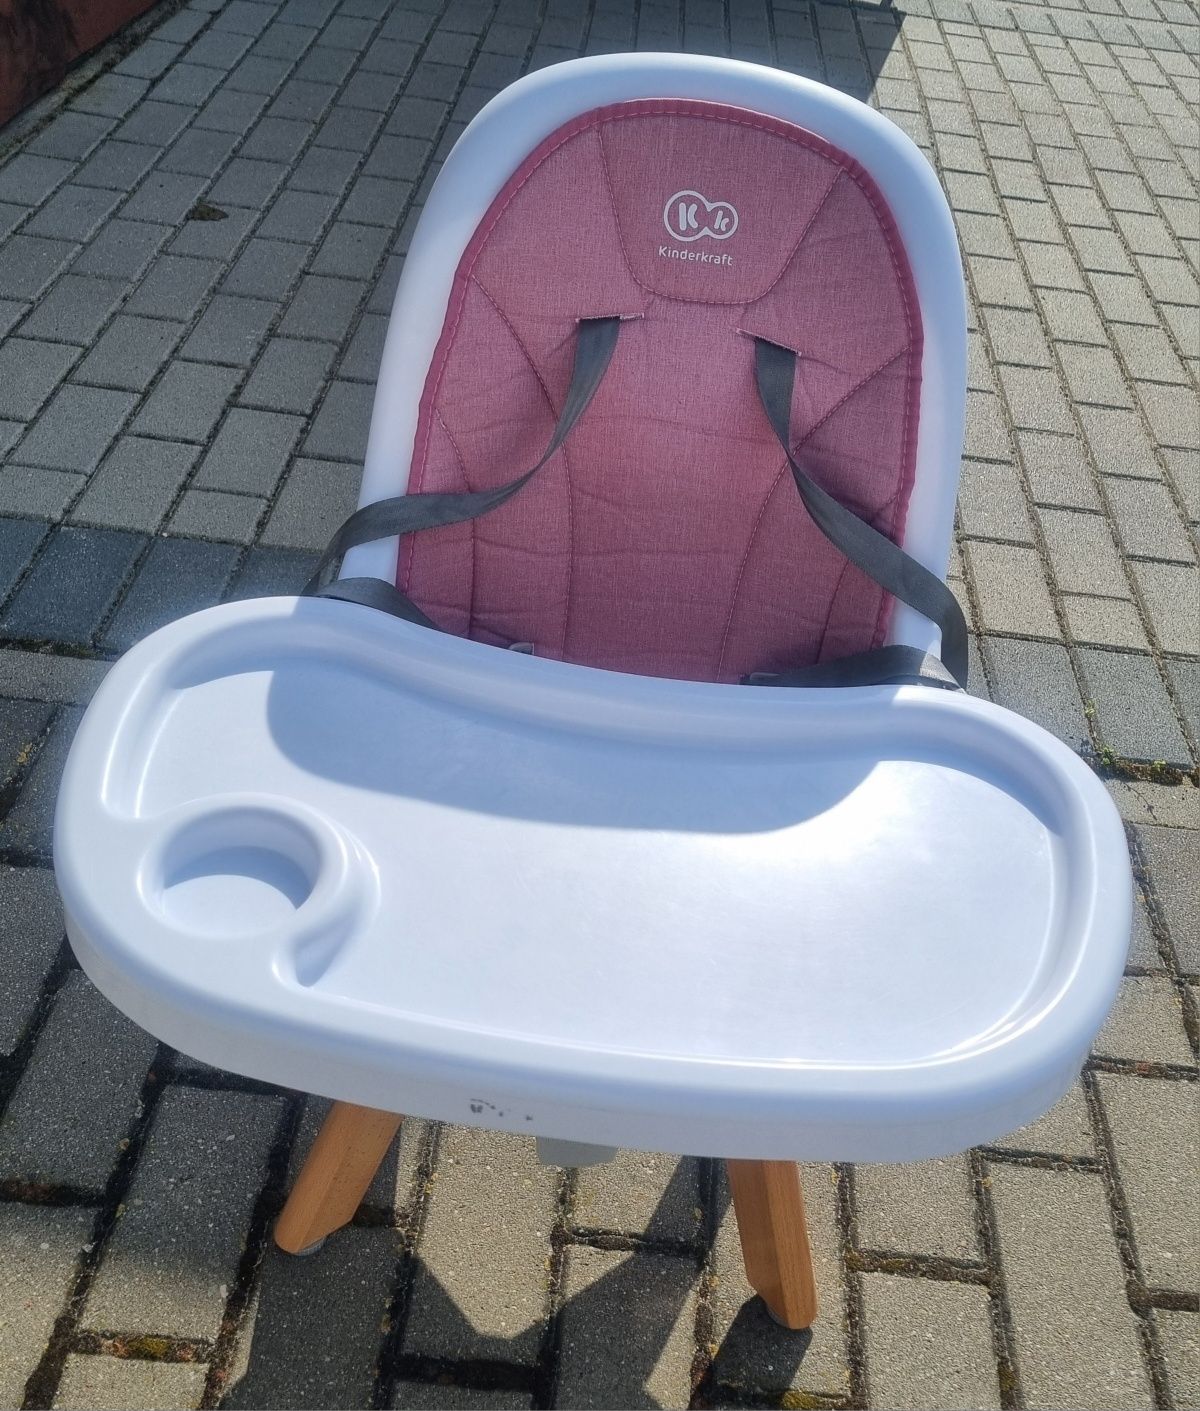 Krzesełko KinderKraft tixi różowe 2w1 do karmienia dziecka